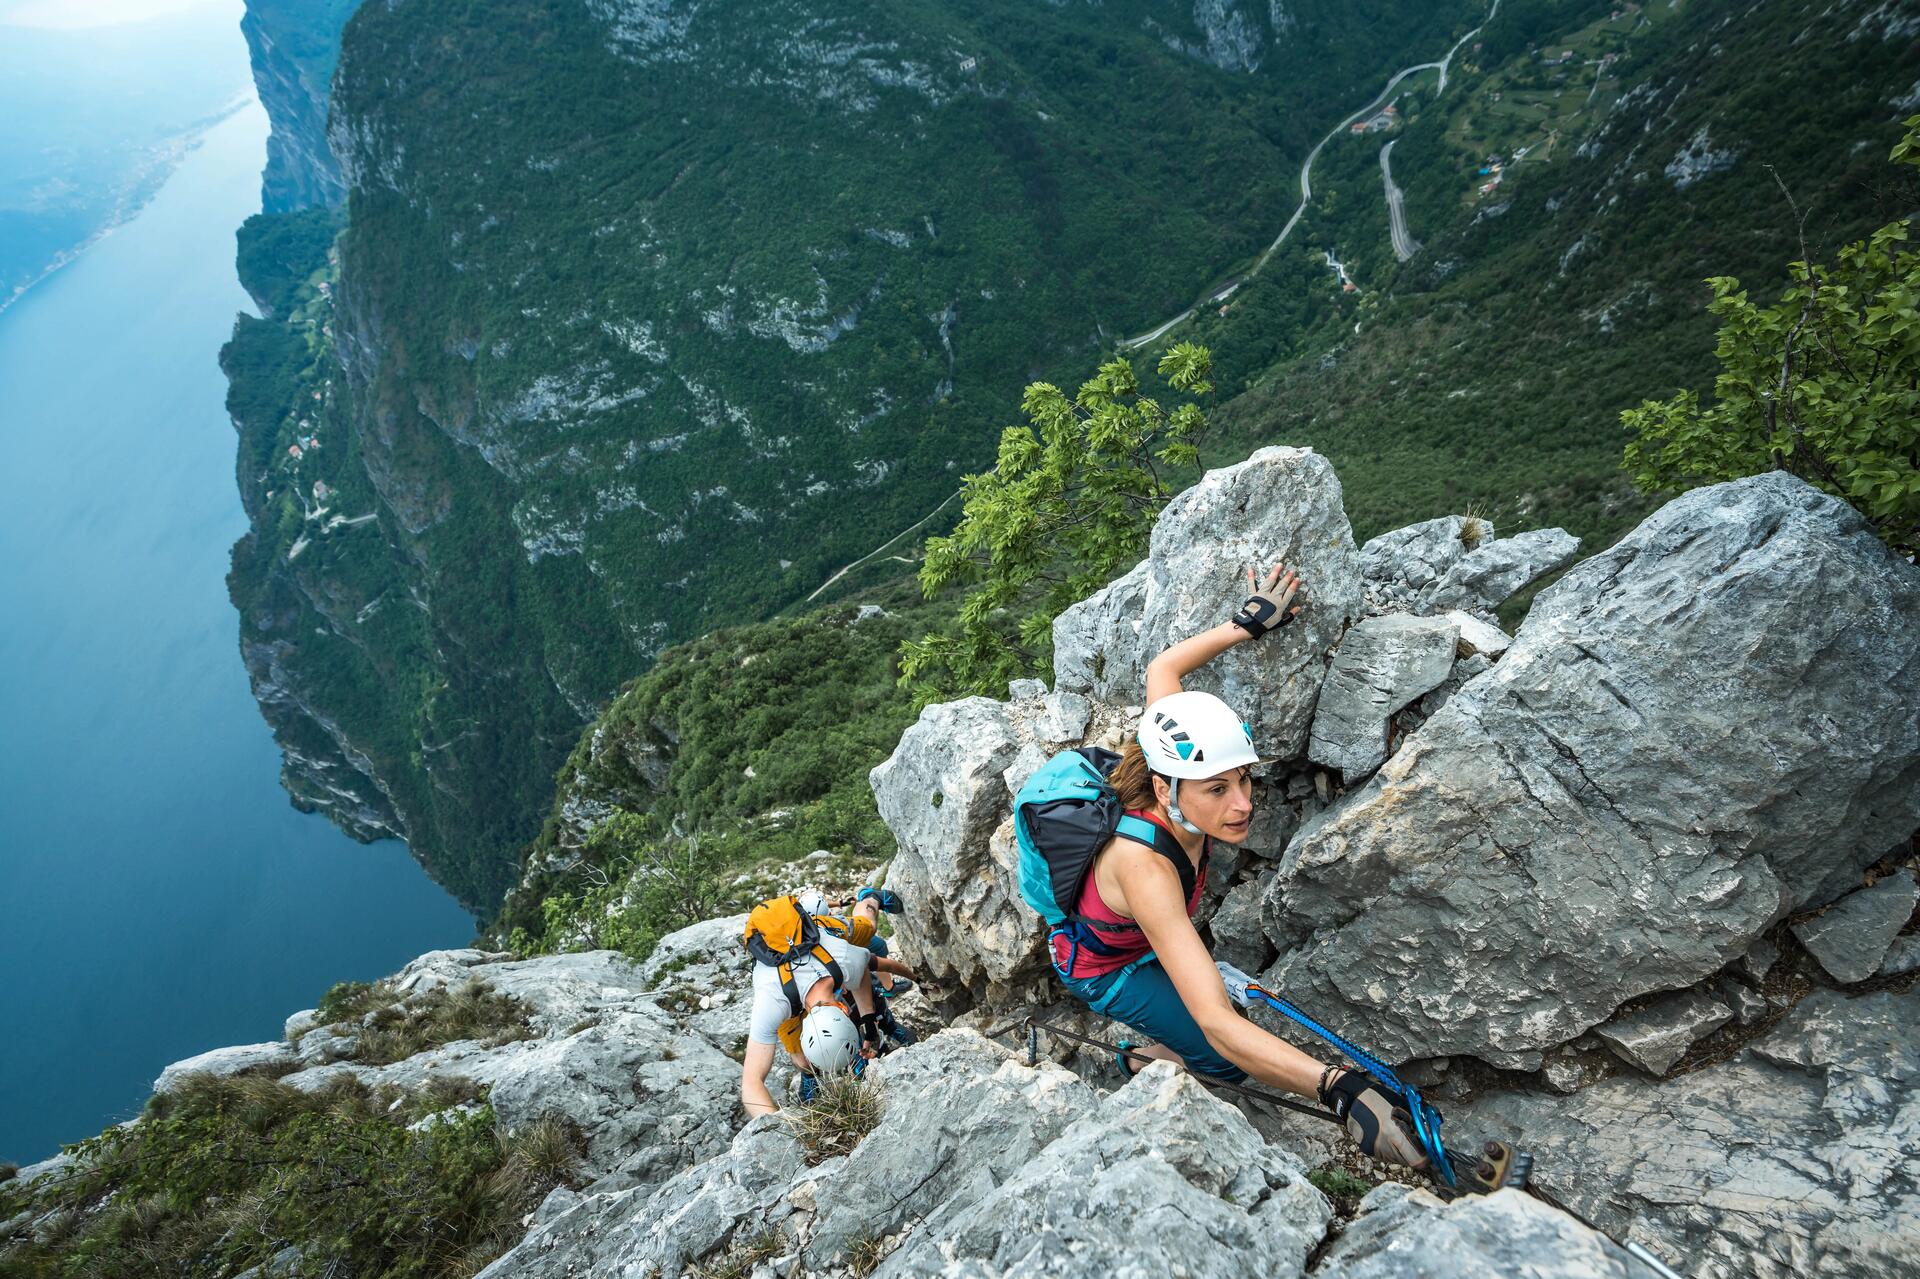 Kobieta i mężczyzna w kaskach wspinaczkowych uprawiający wspinaczkę górską z użyciem lin asekuracyjnych